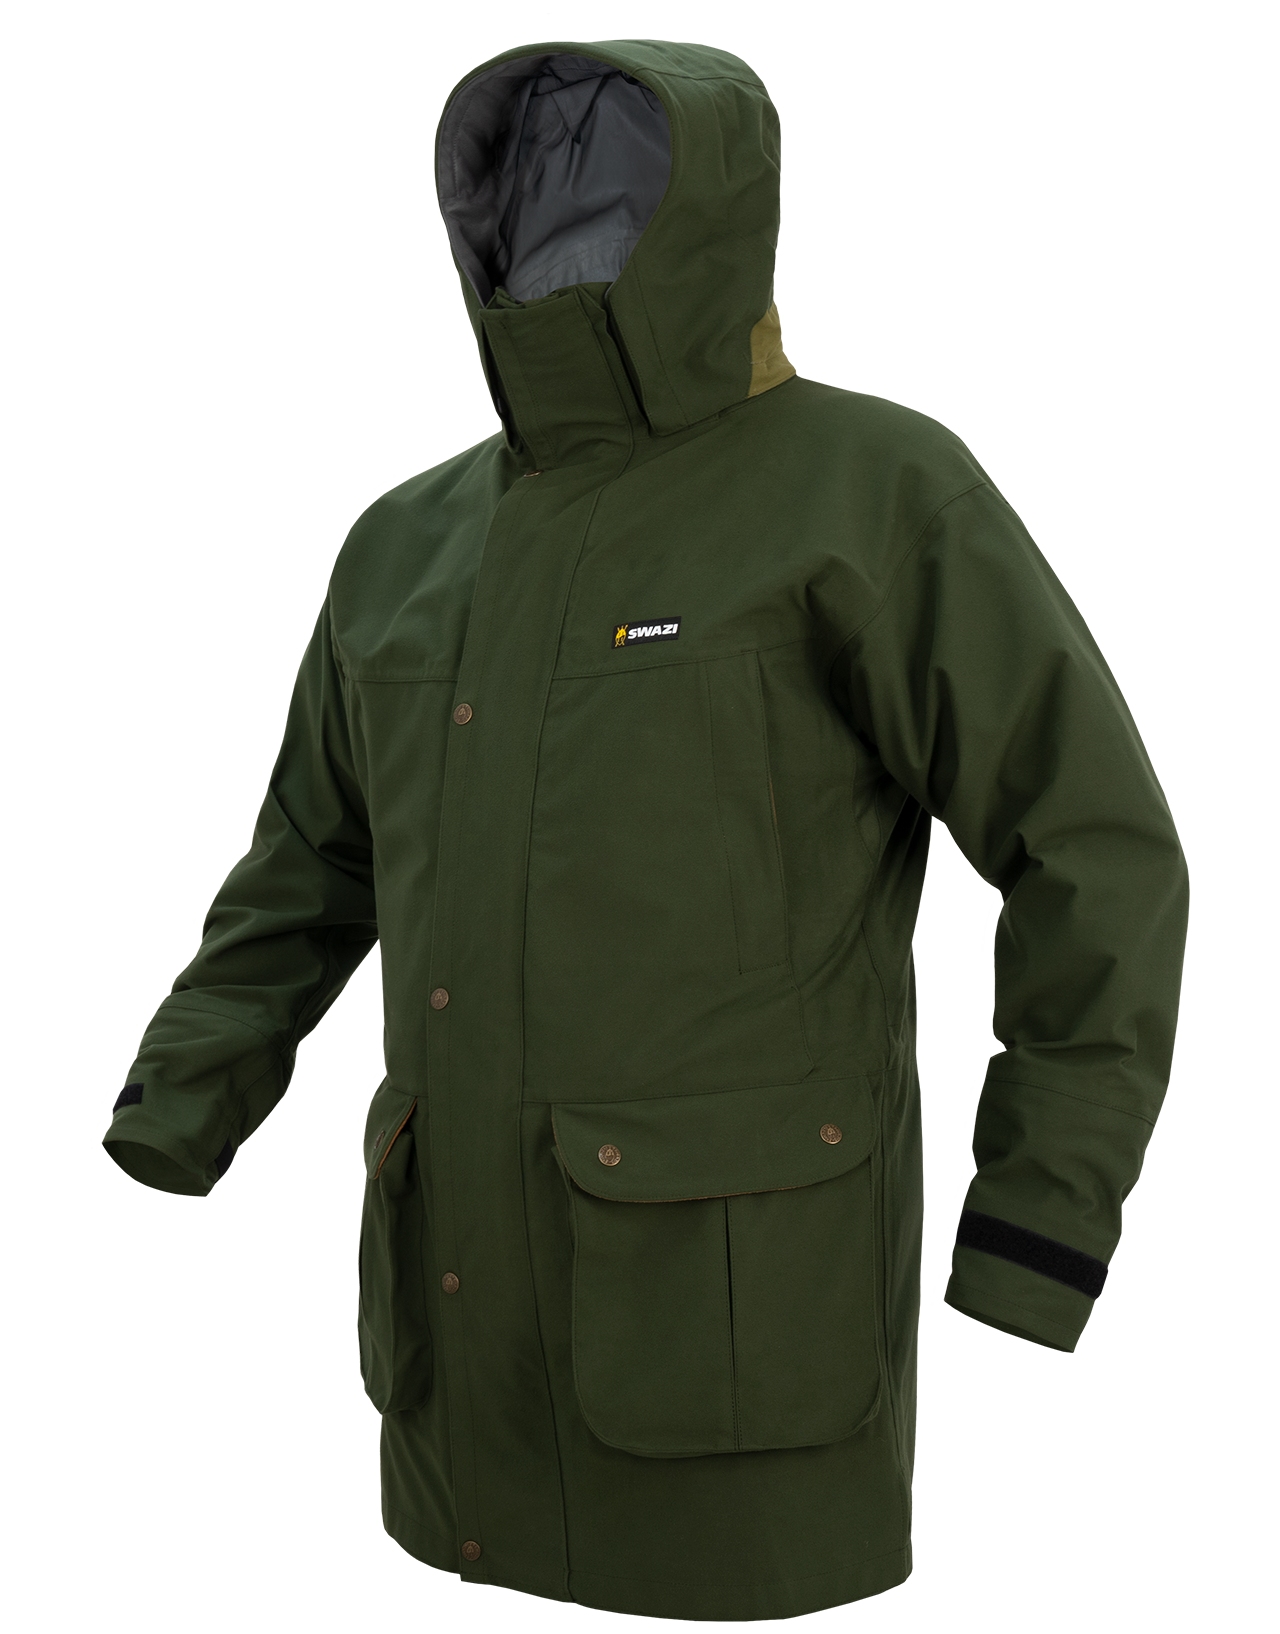 Swazi Jackets - The Wapiti XP Waterproof Jacket